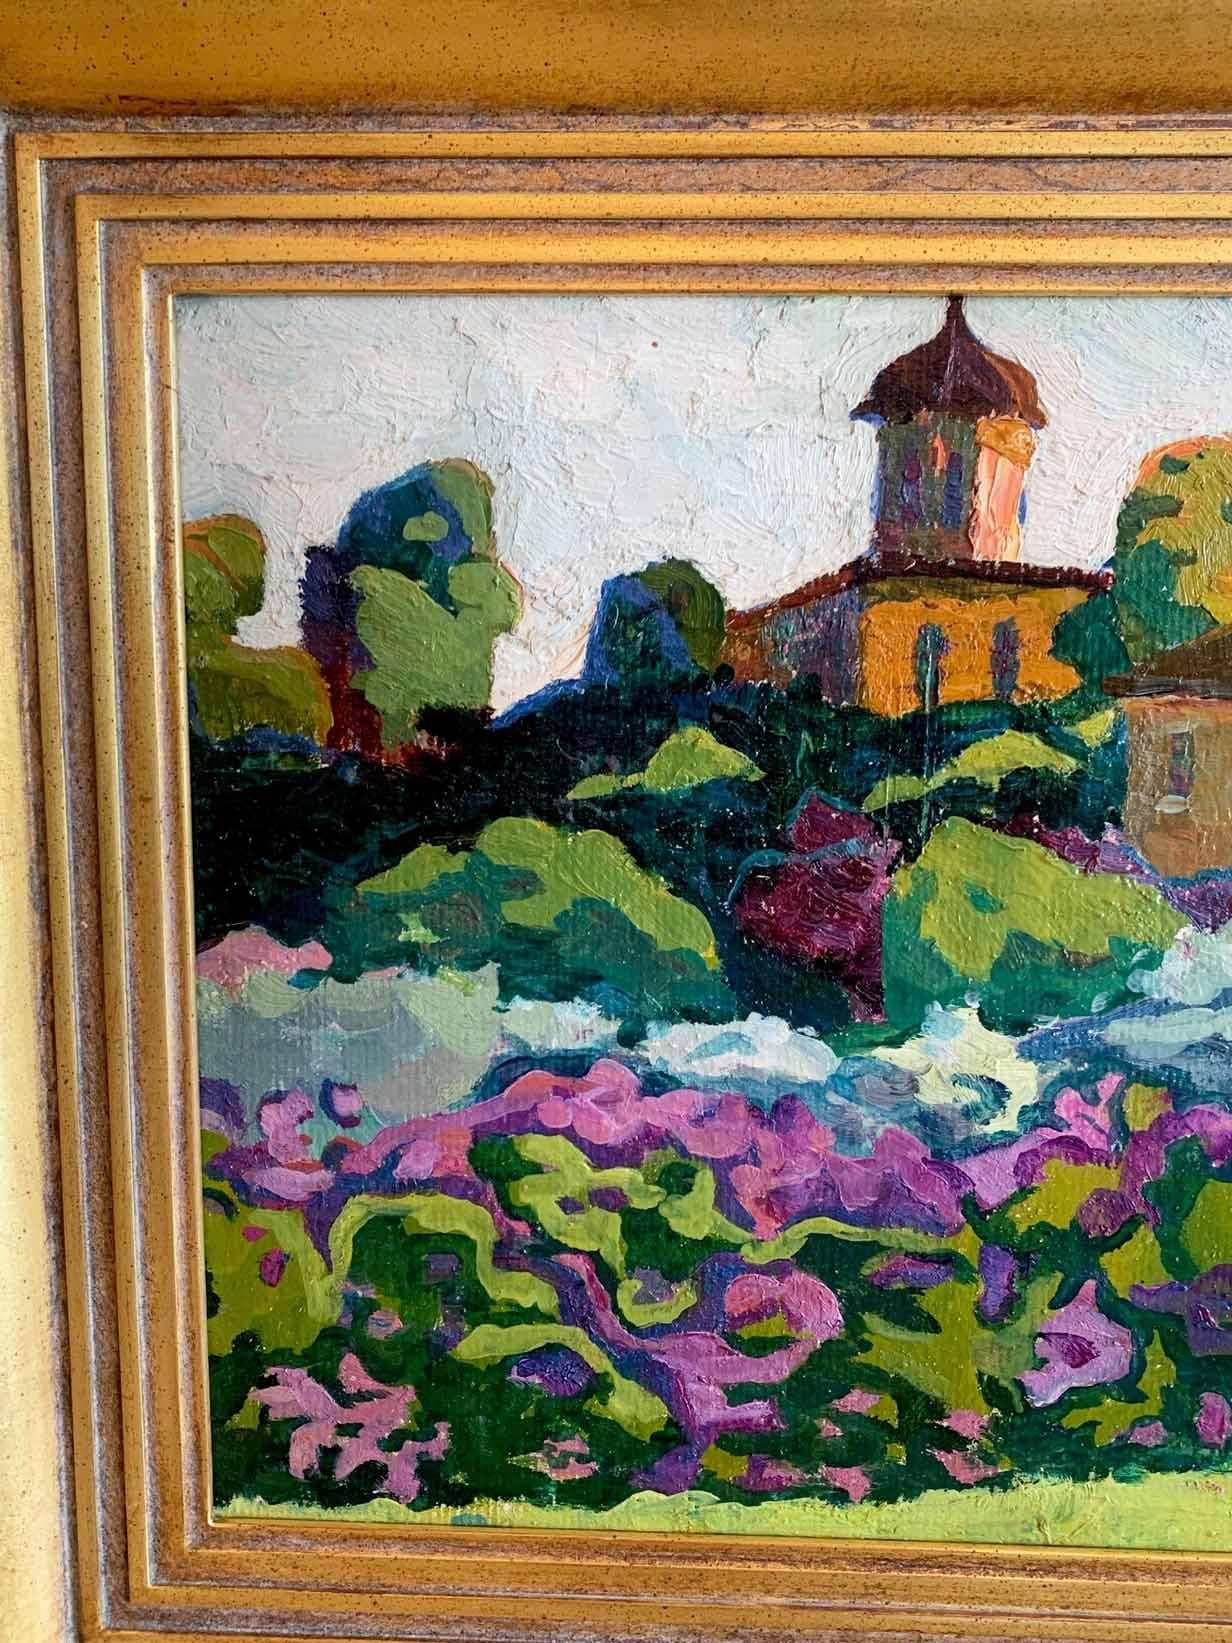 Evgeni Chuikov était un maître impressionniste pendant et après l'ère soviétique.  Son impressionnisme lyrique a été très apprécié, même s'il allait à l'encontre du style artistique officiel de l'Union soviétique, le réalisme socialiste.  Ses œuvres